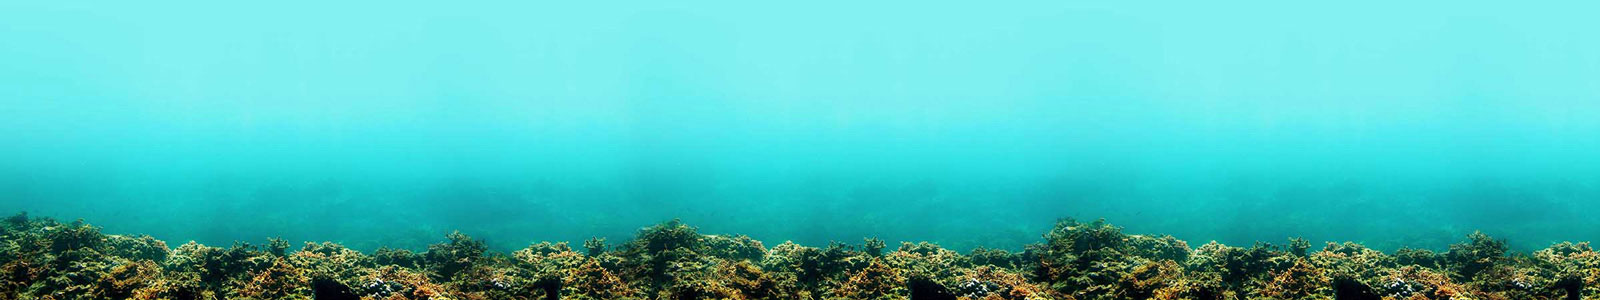 №3726 - Подводная панорама поверхности